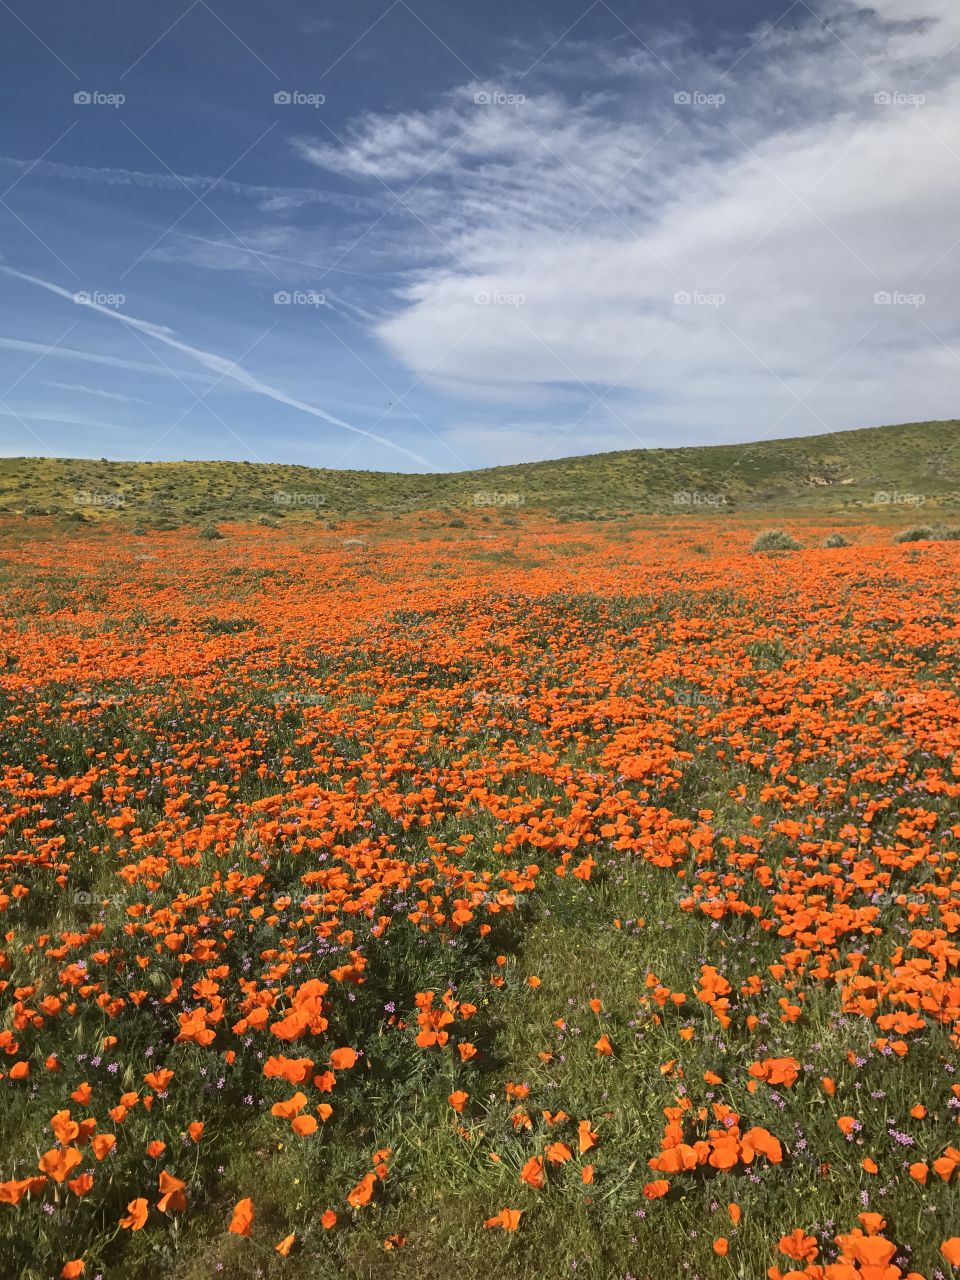 California poppy fields 